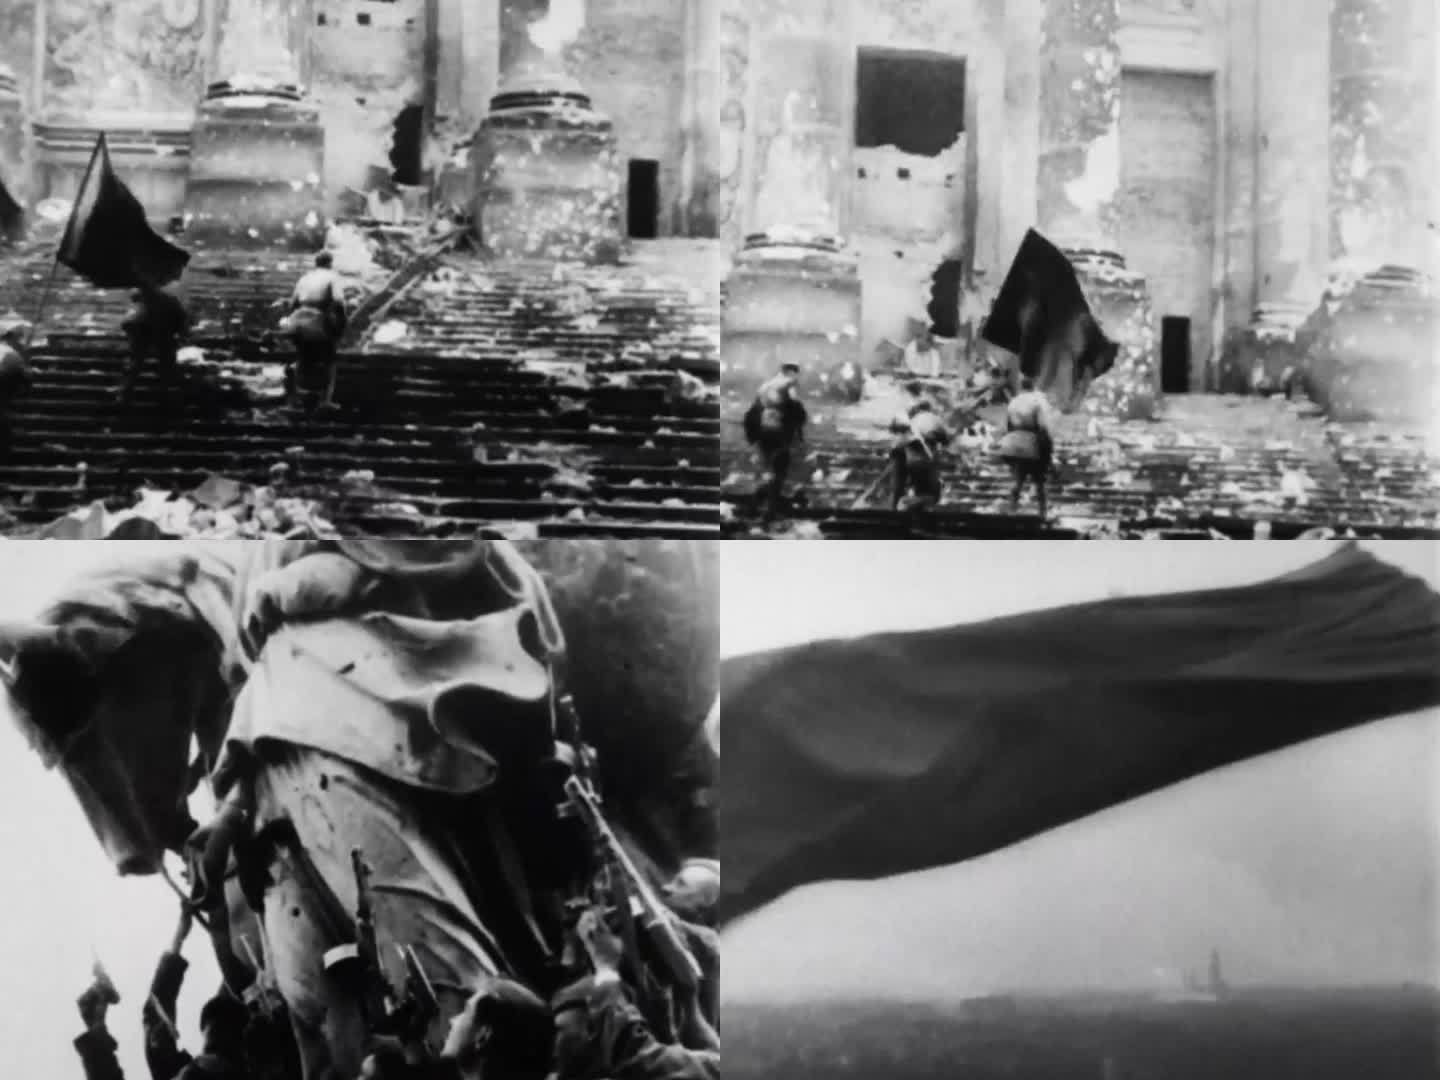 苏军攻入柏林插旗视频 40年代